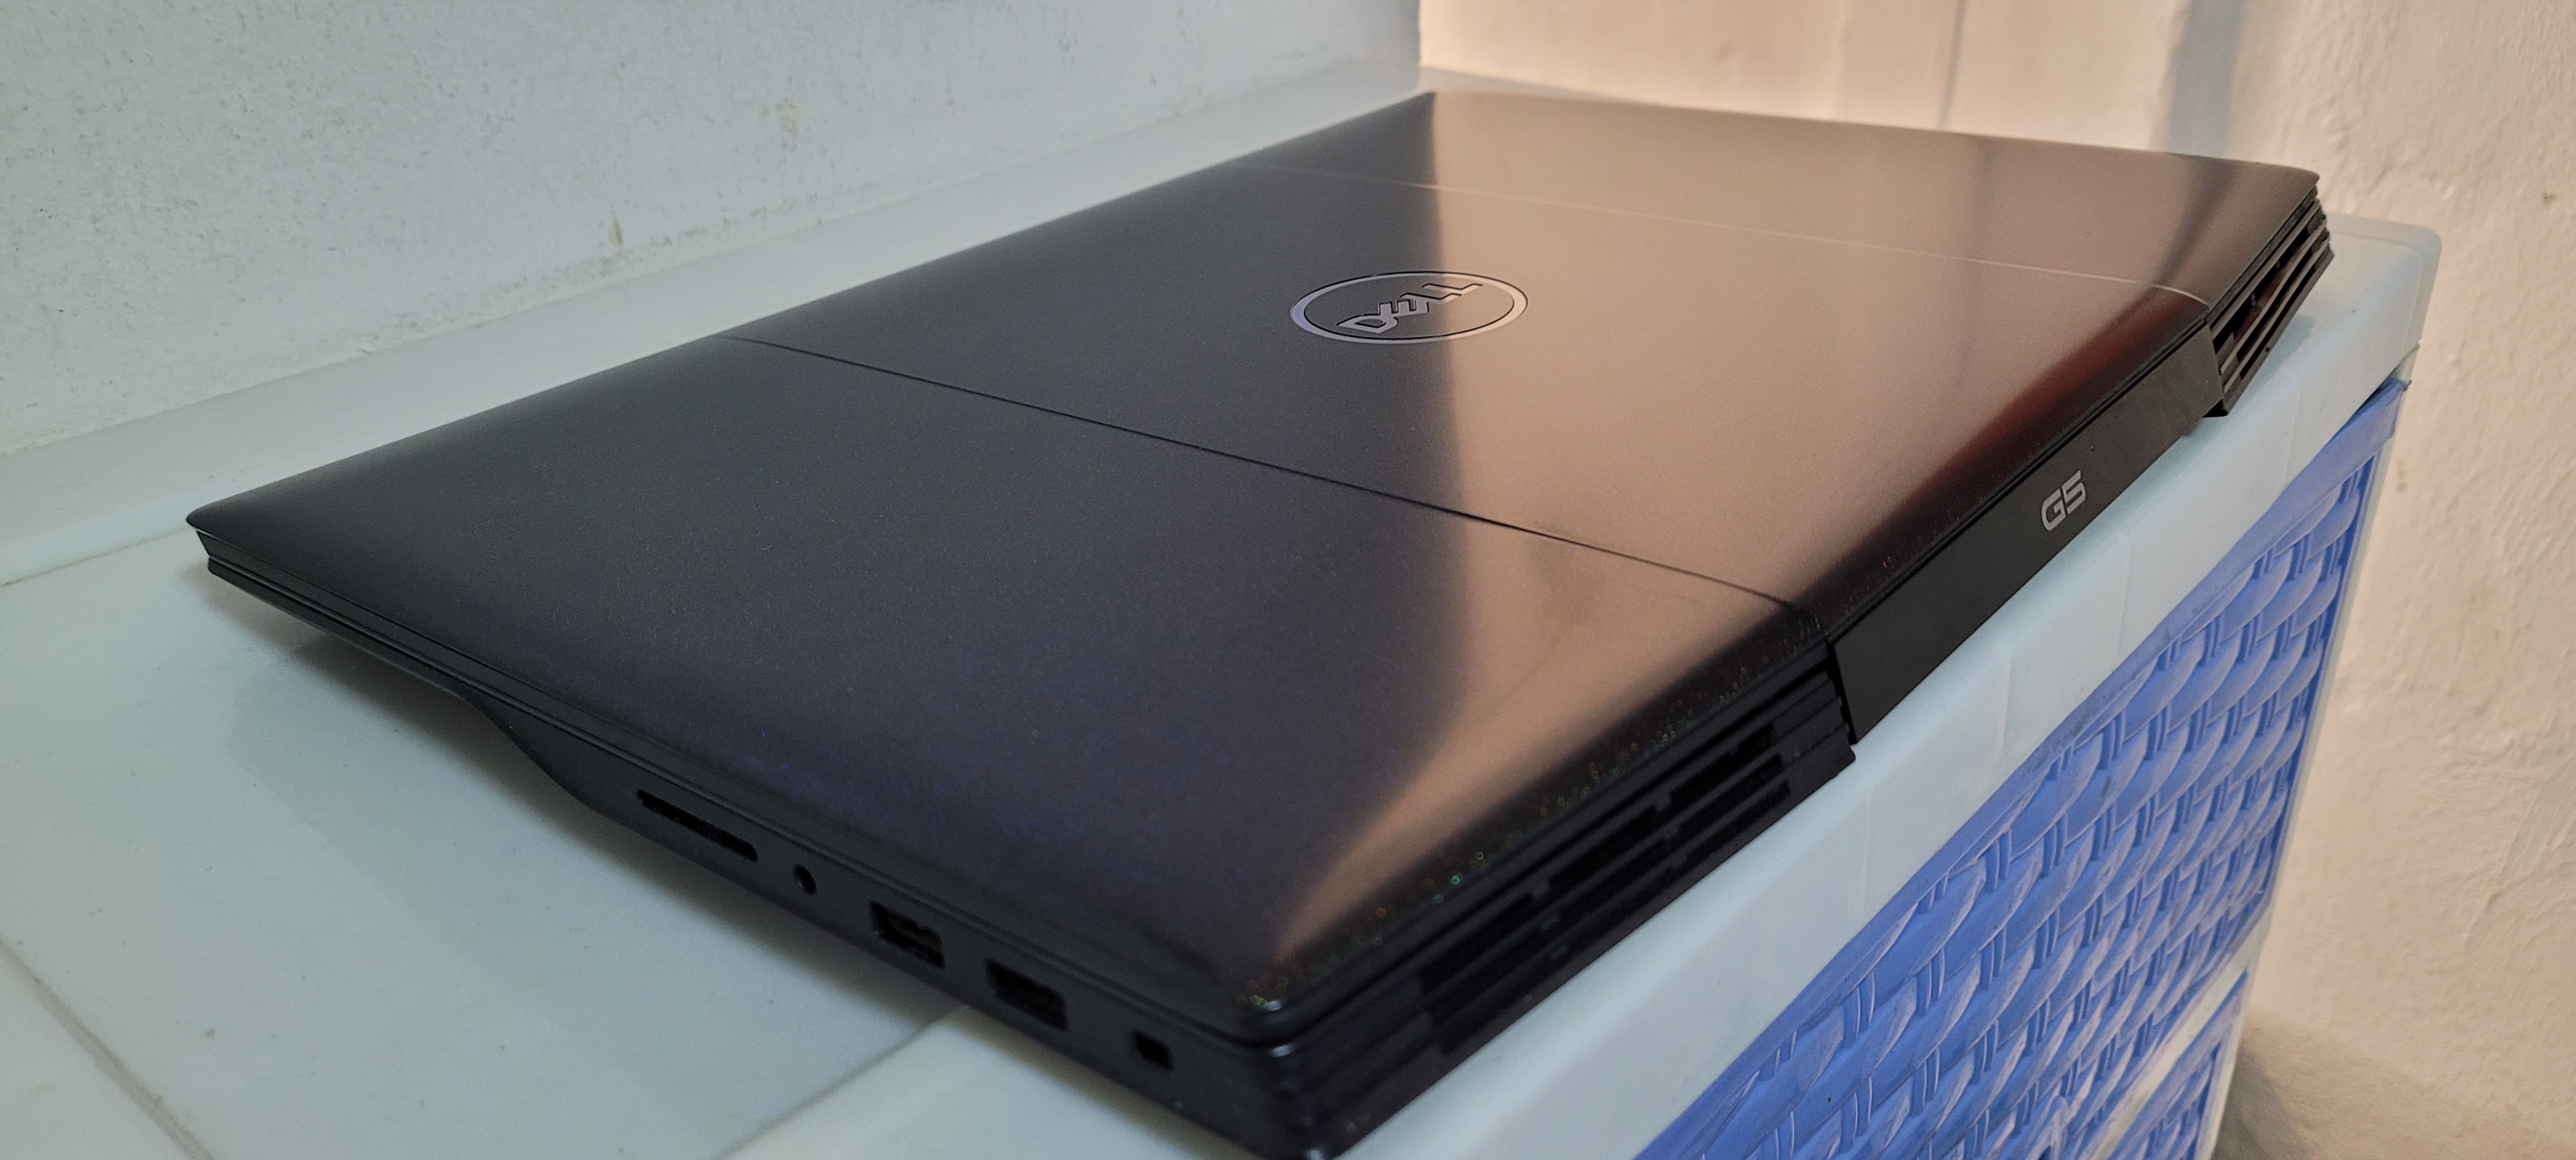 computadoras y laptops - Laptop Dell g5 17 Pulg Core i7 10th Gen Ram 16gb Disco 256 Y 1TB Gtx 165pTi 4gb 2